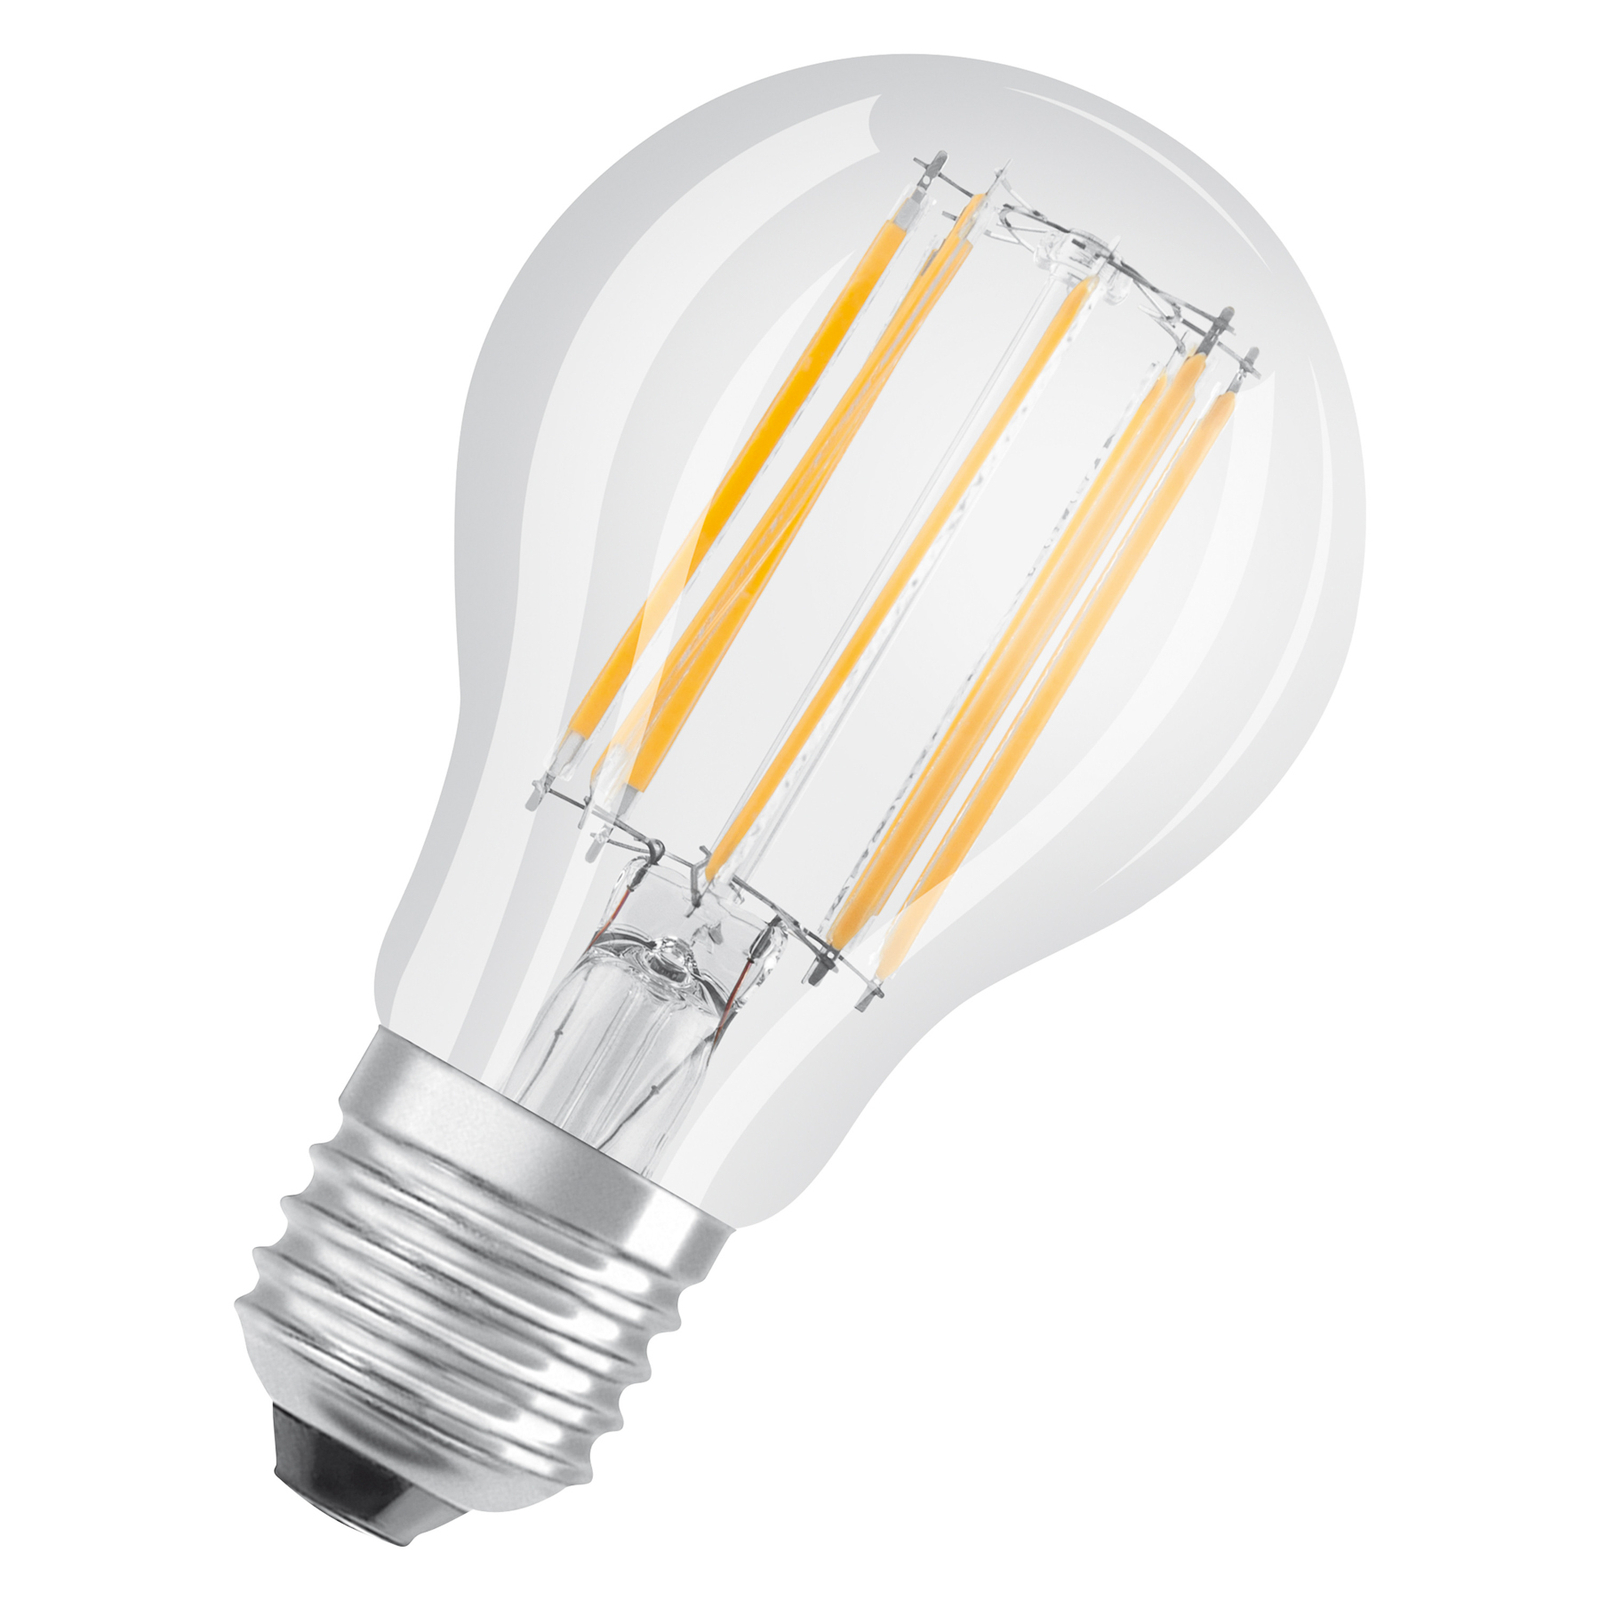 OSRAM filament LED bulb E27 base 11 W 4,000 K 3x